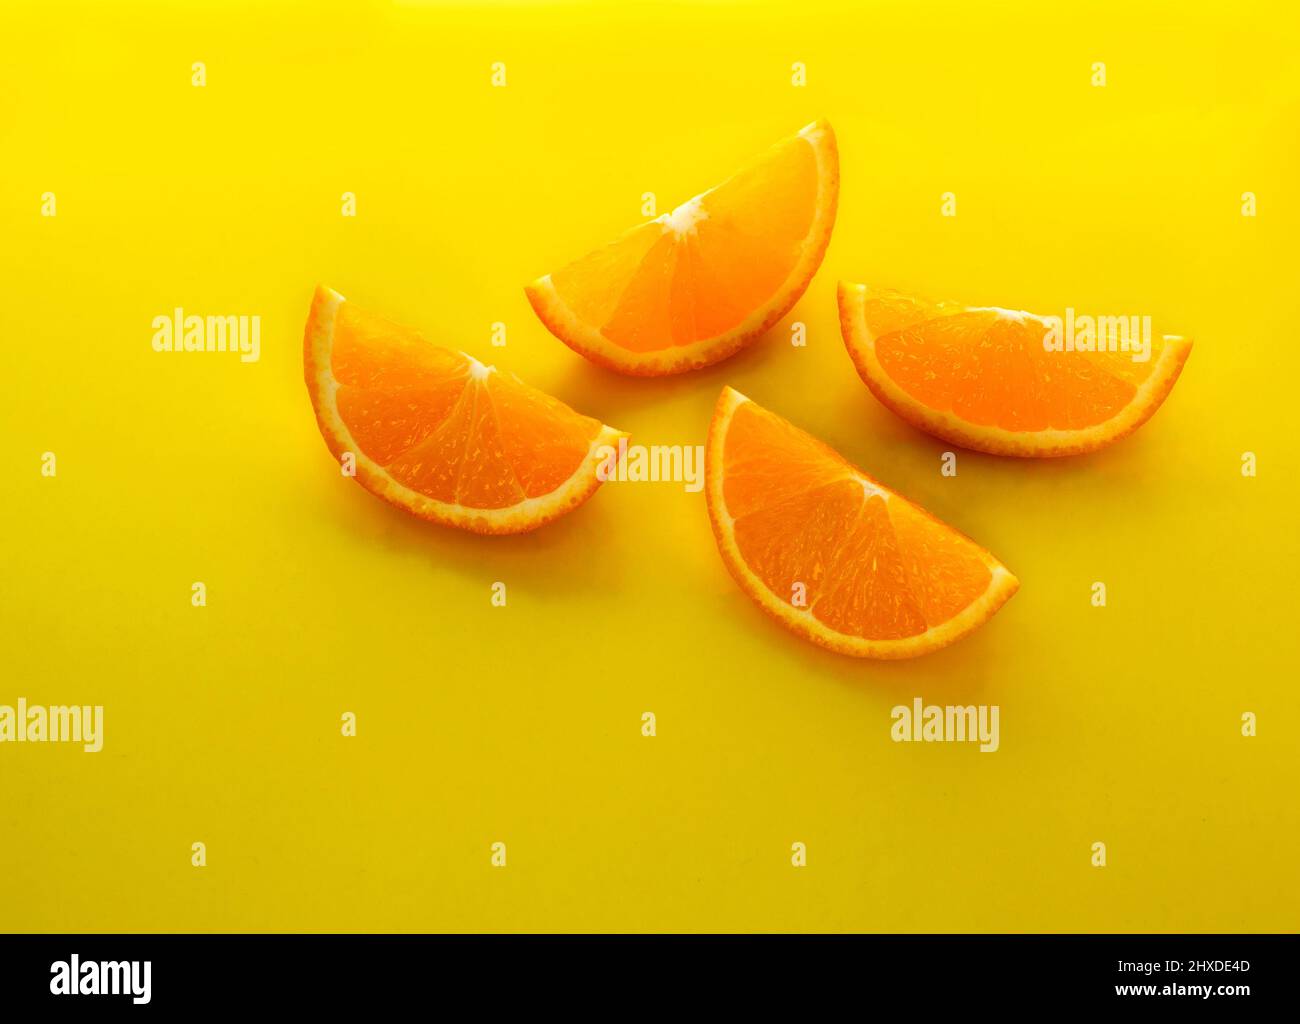 Frutta all'arancia. Fette arancioni su sfondo giallo. Frutta fresca di agrumi. Foto Stock